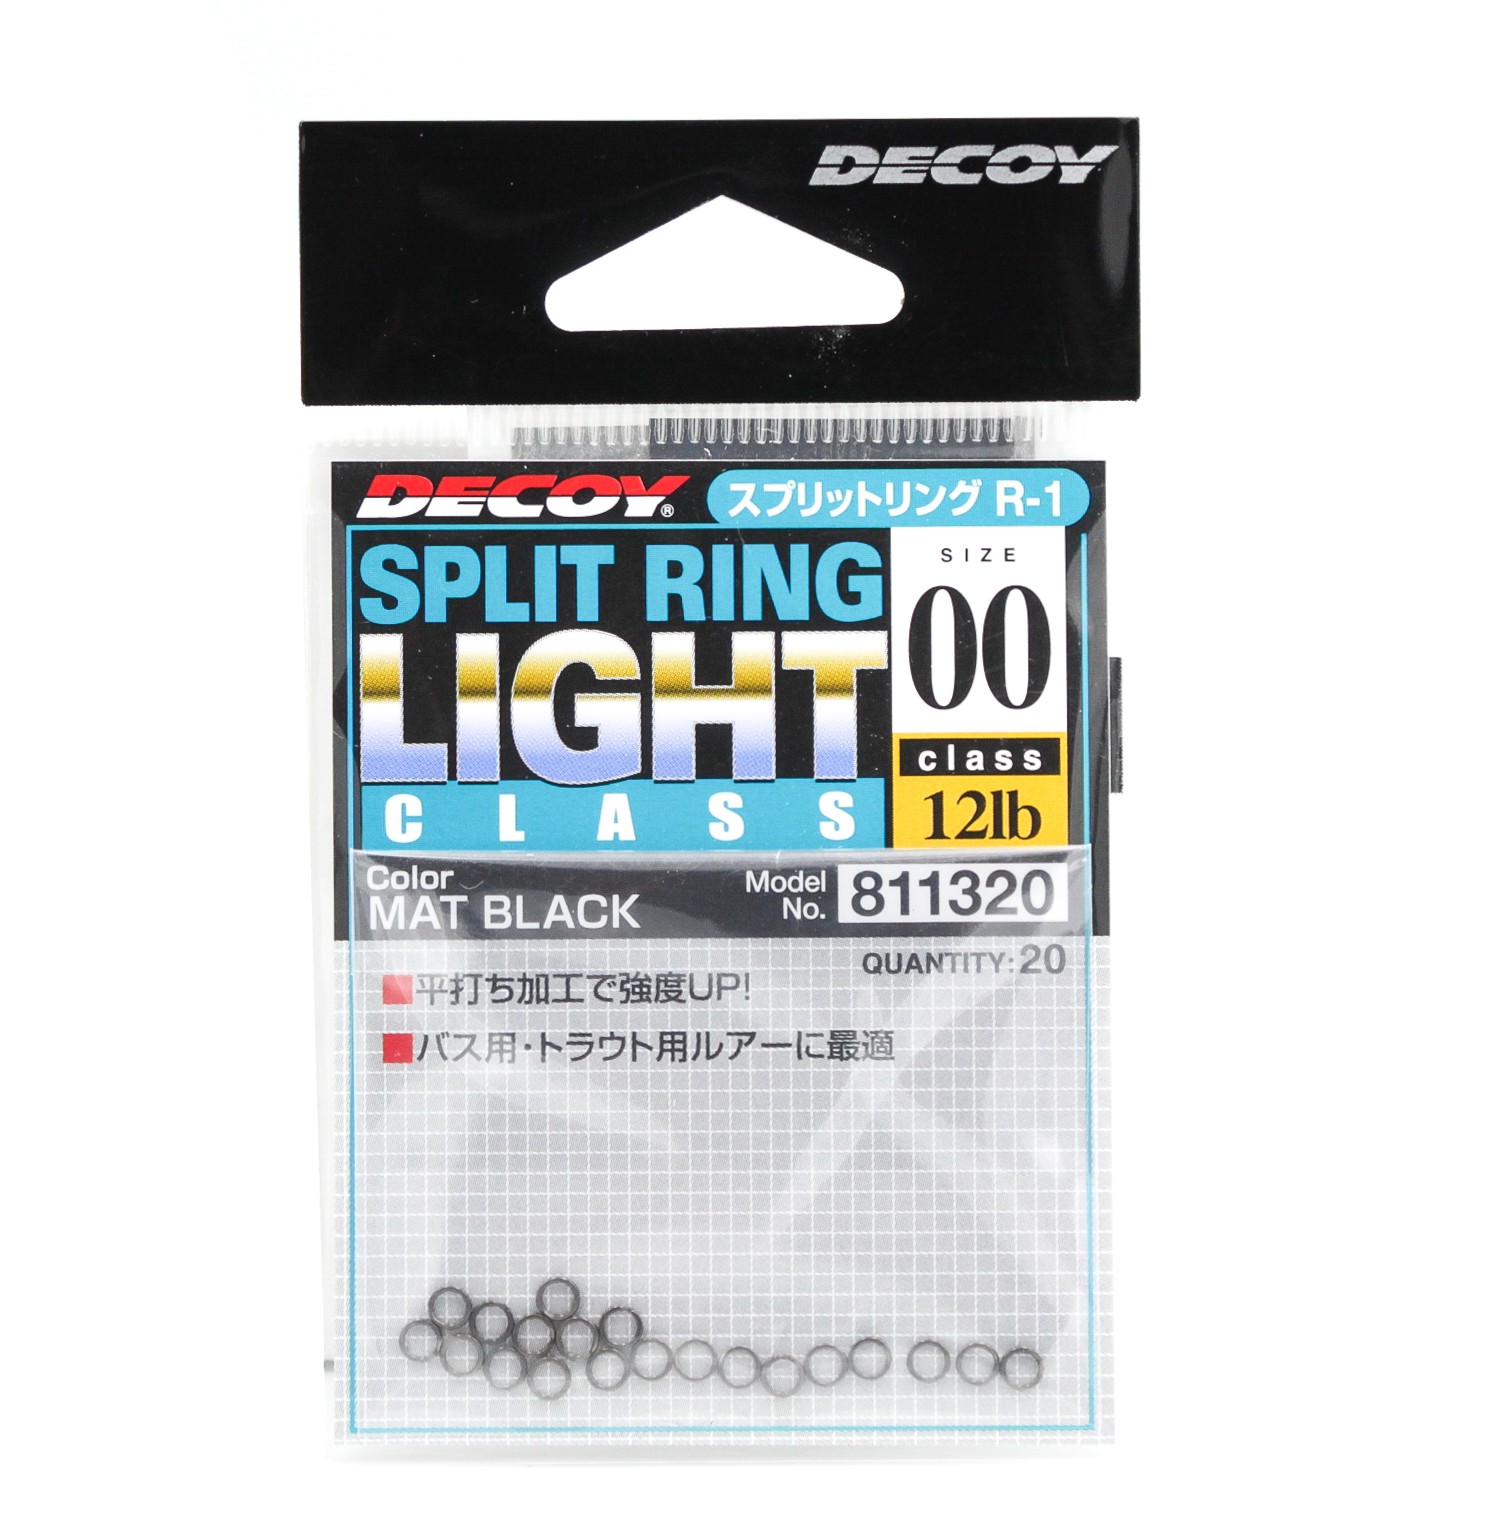 Заводное кольцо Decoy Split Ring black №00 - фото 1